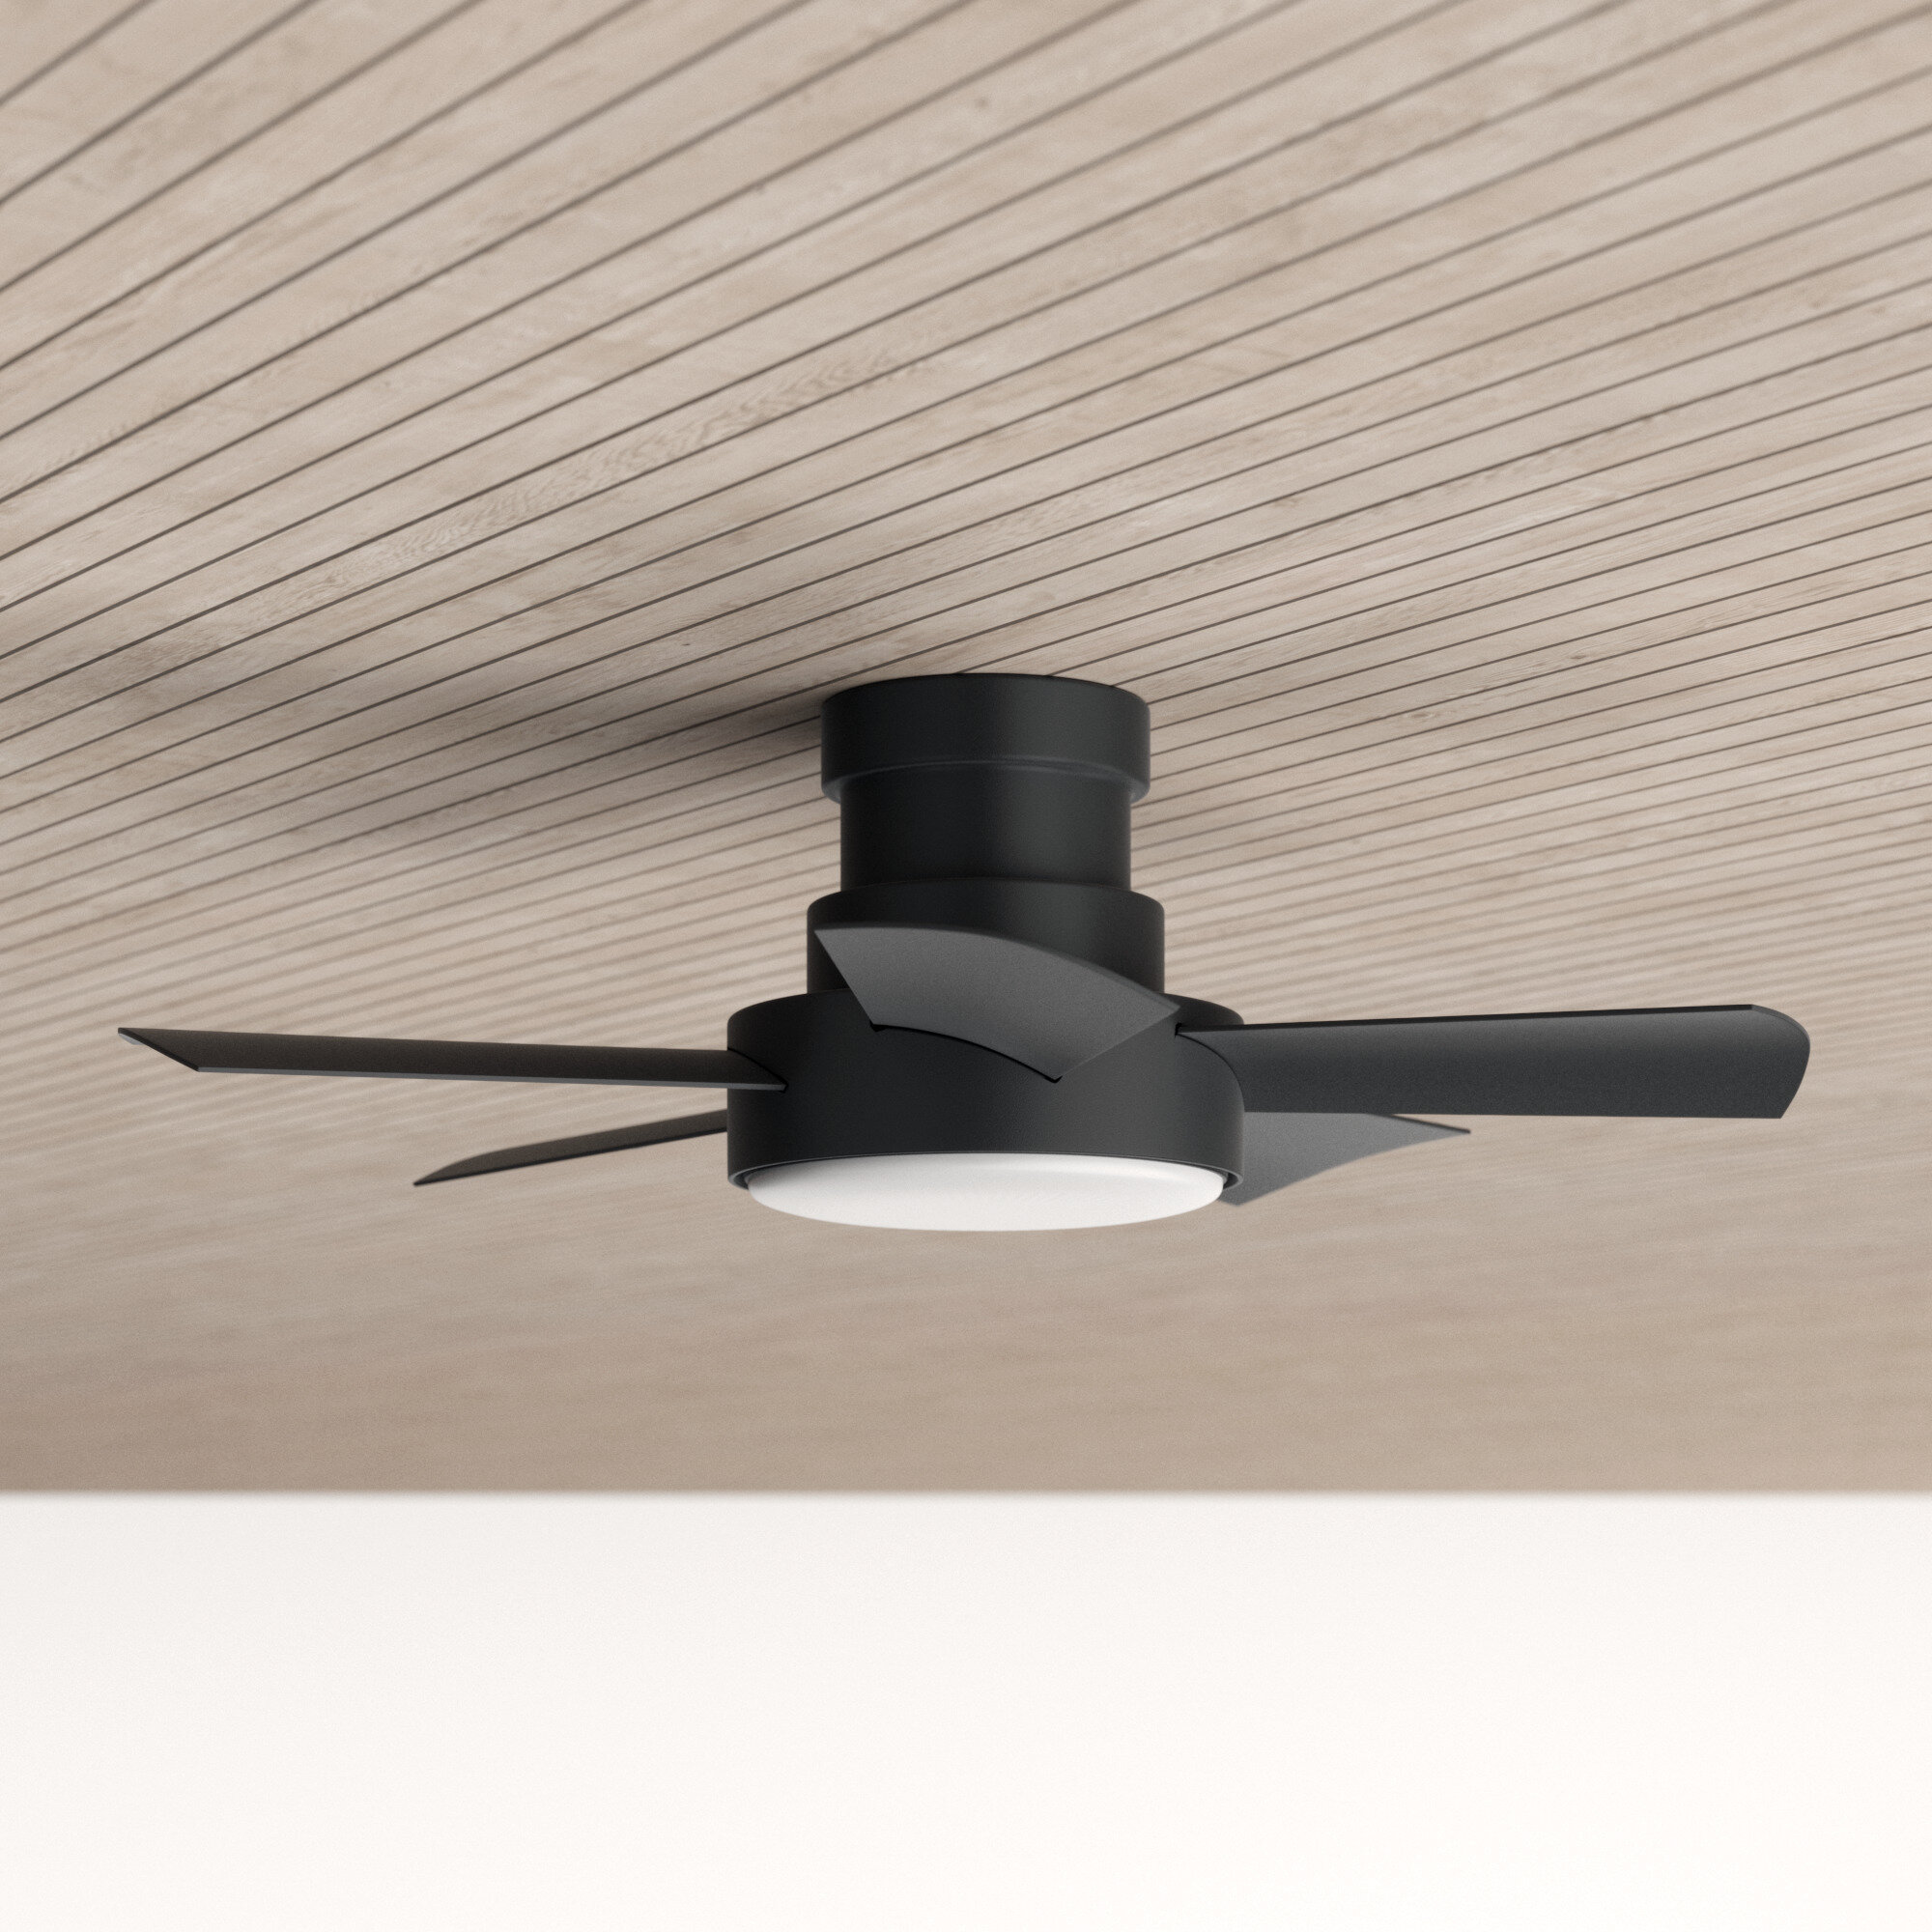 Vox 5 Blade Outdoor Led Smart Flush Mount Ceiling Fan Light Kit Reviews Allmodern